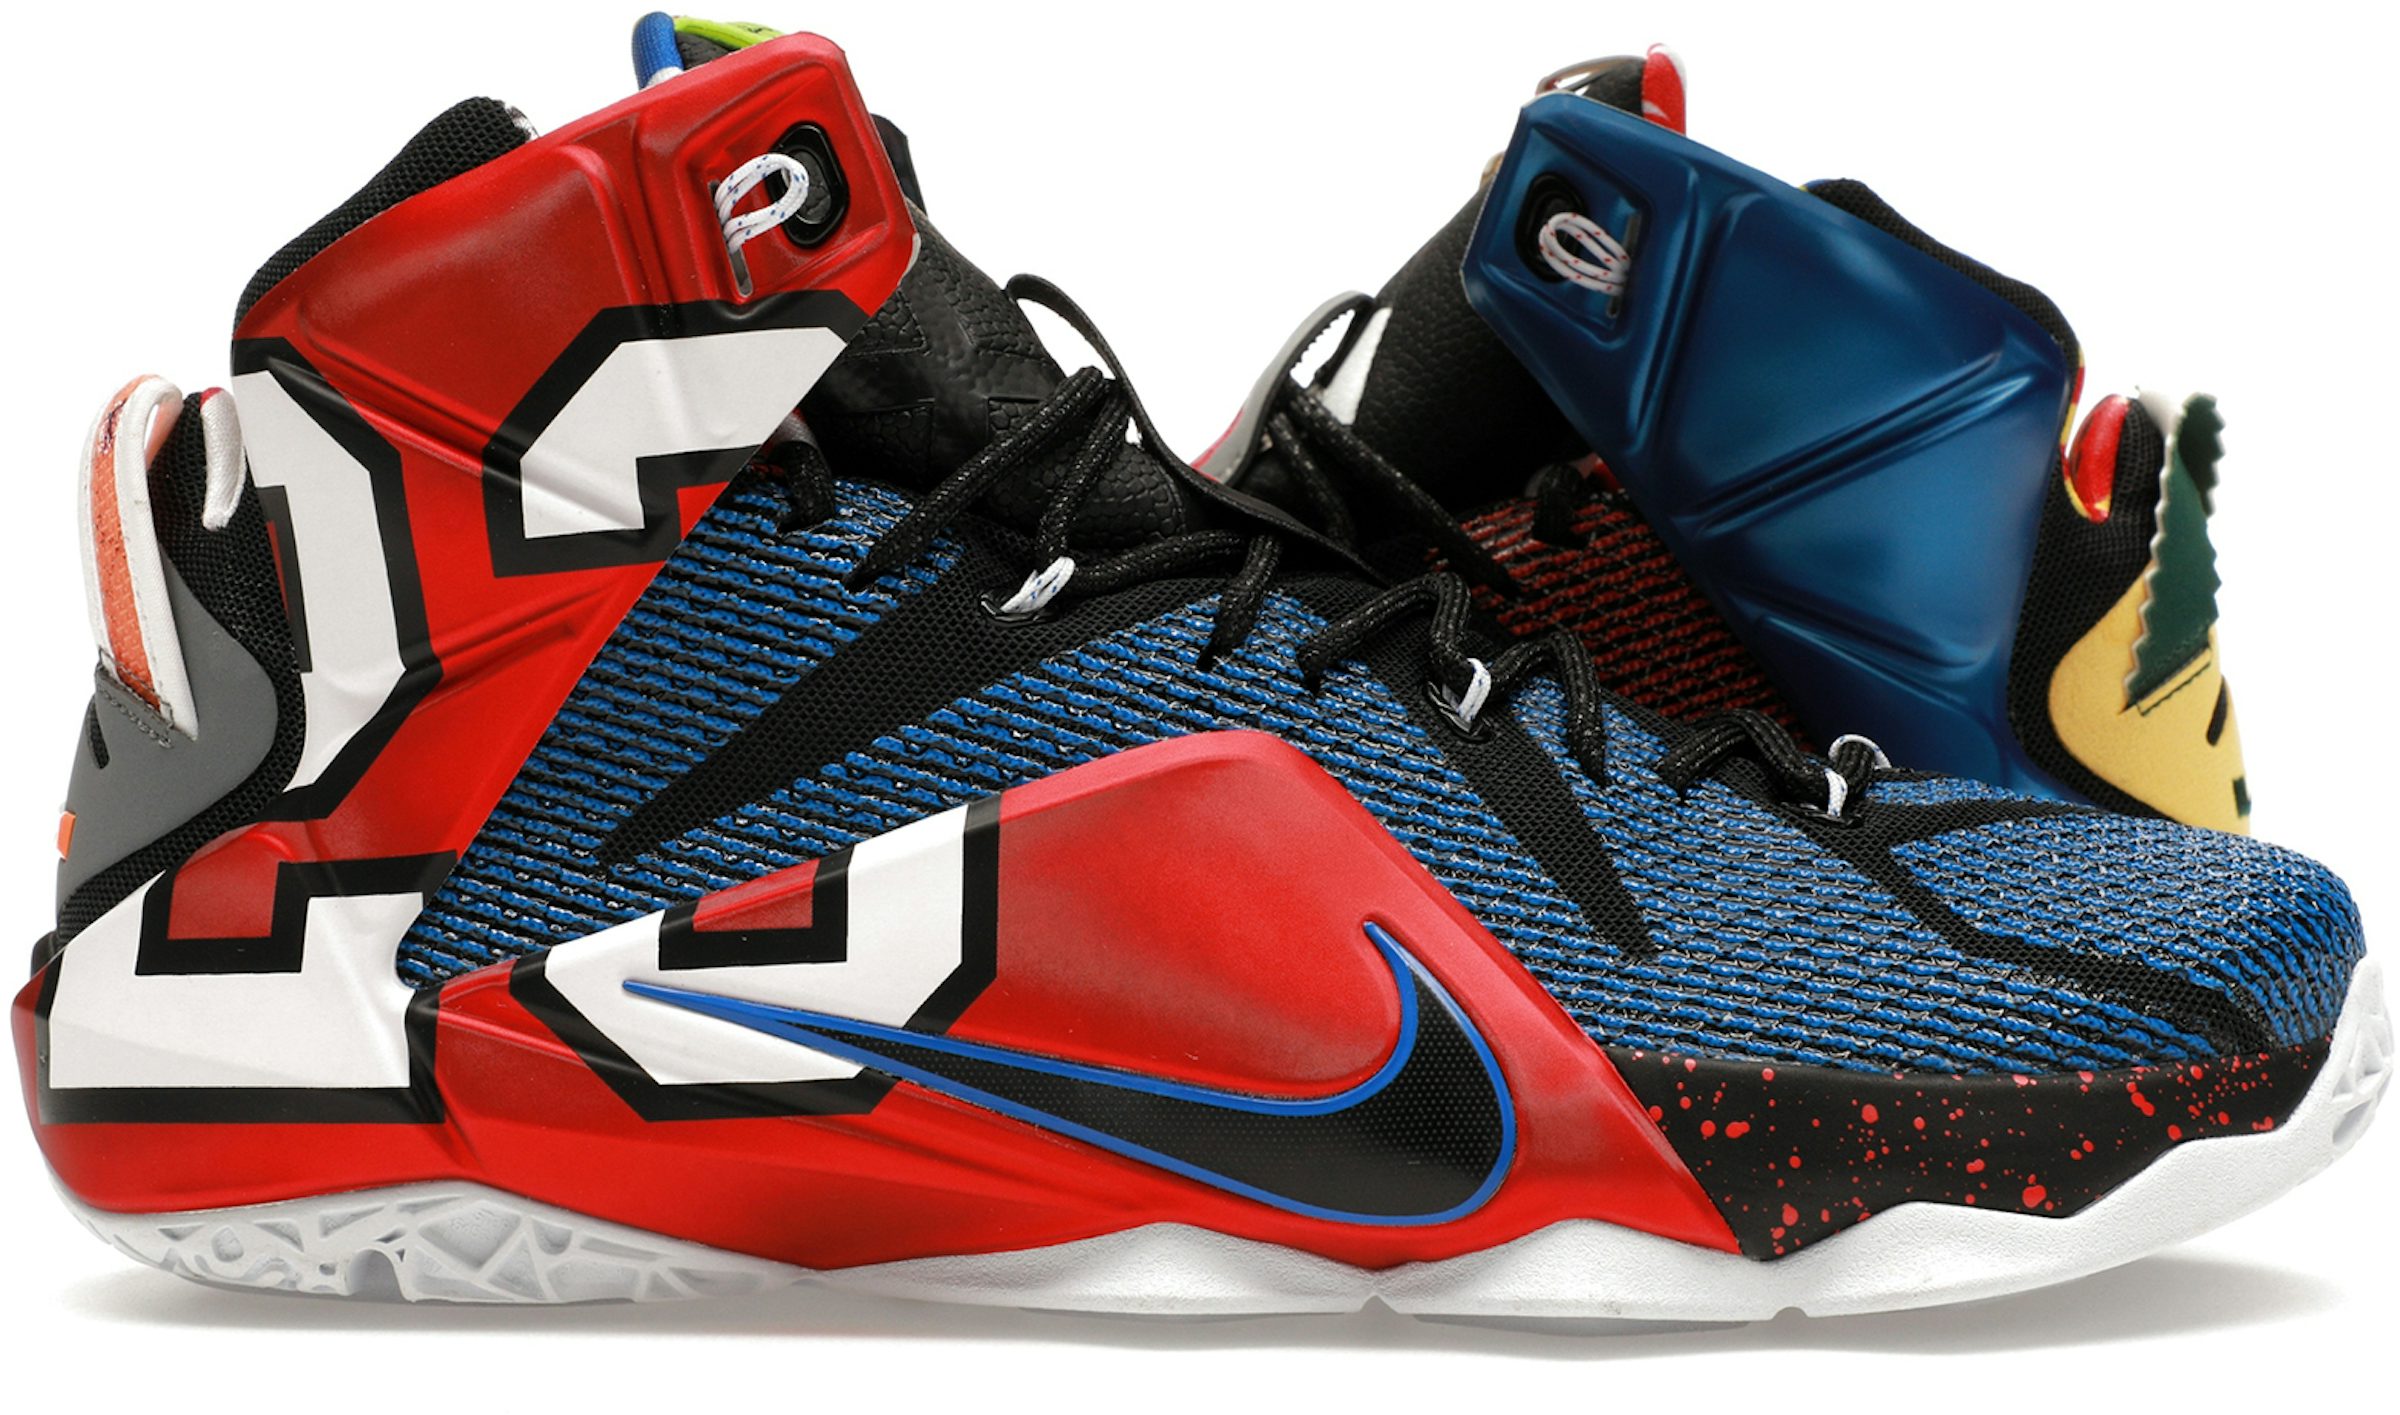 Nike LeBron James 12 shoes 23 Chromosomes Boys Size 7 Youth Black